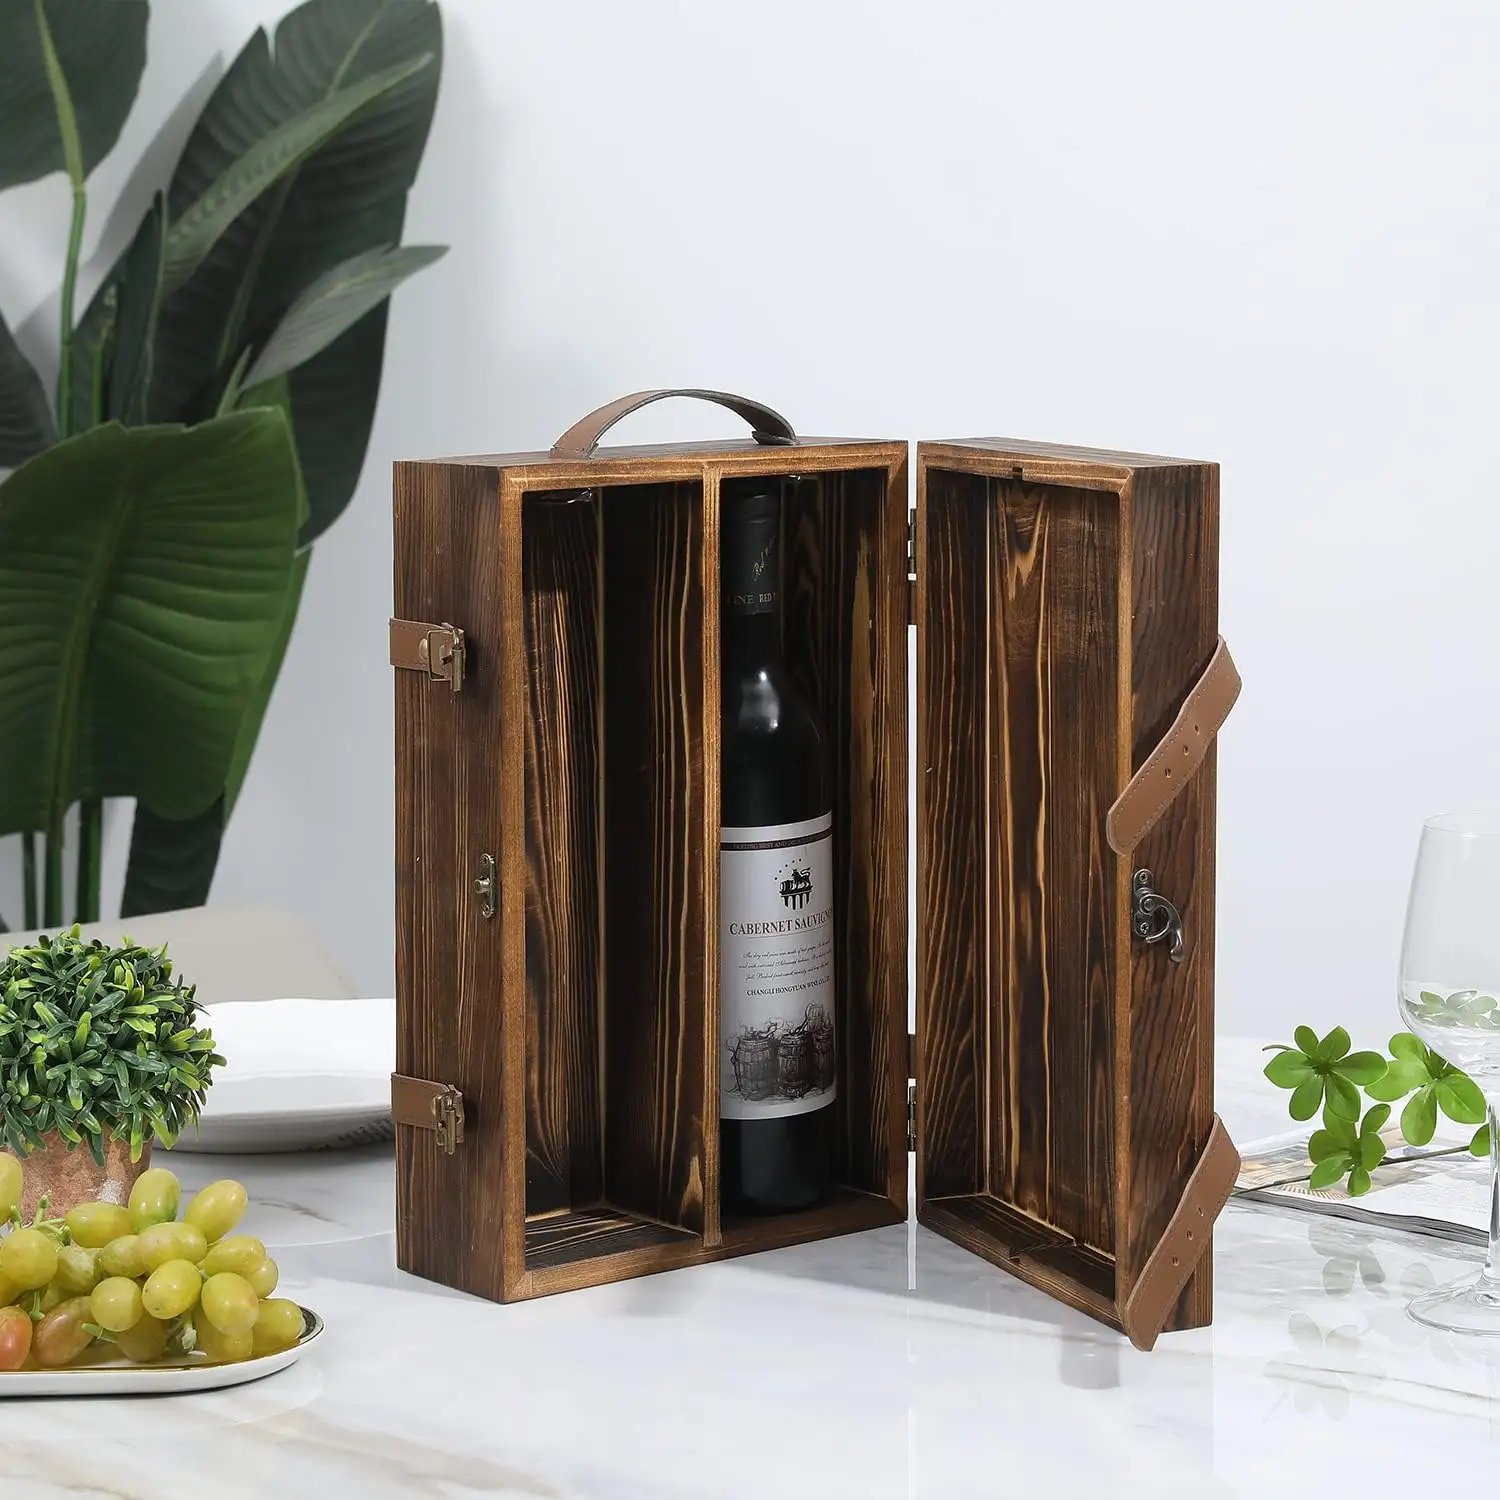 ワイン包装木箱ワインギフトボックス竹ワインボックス